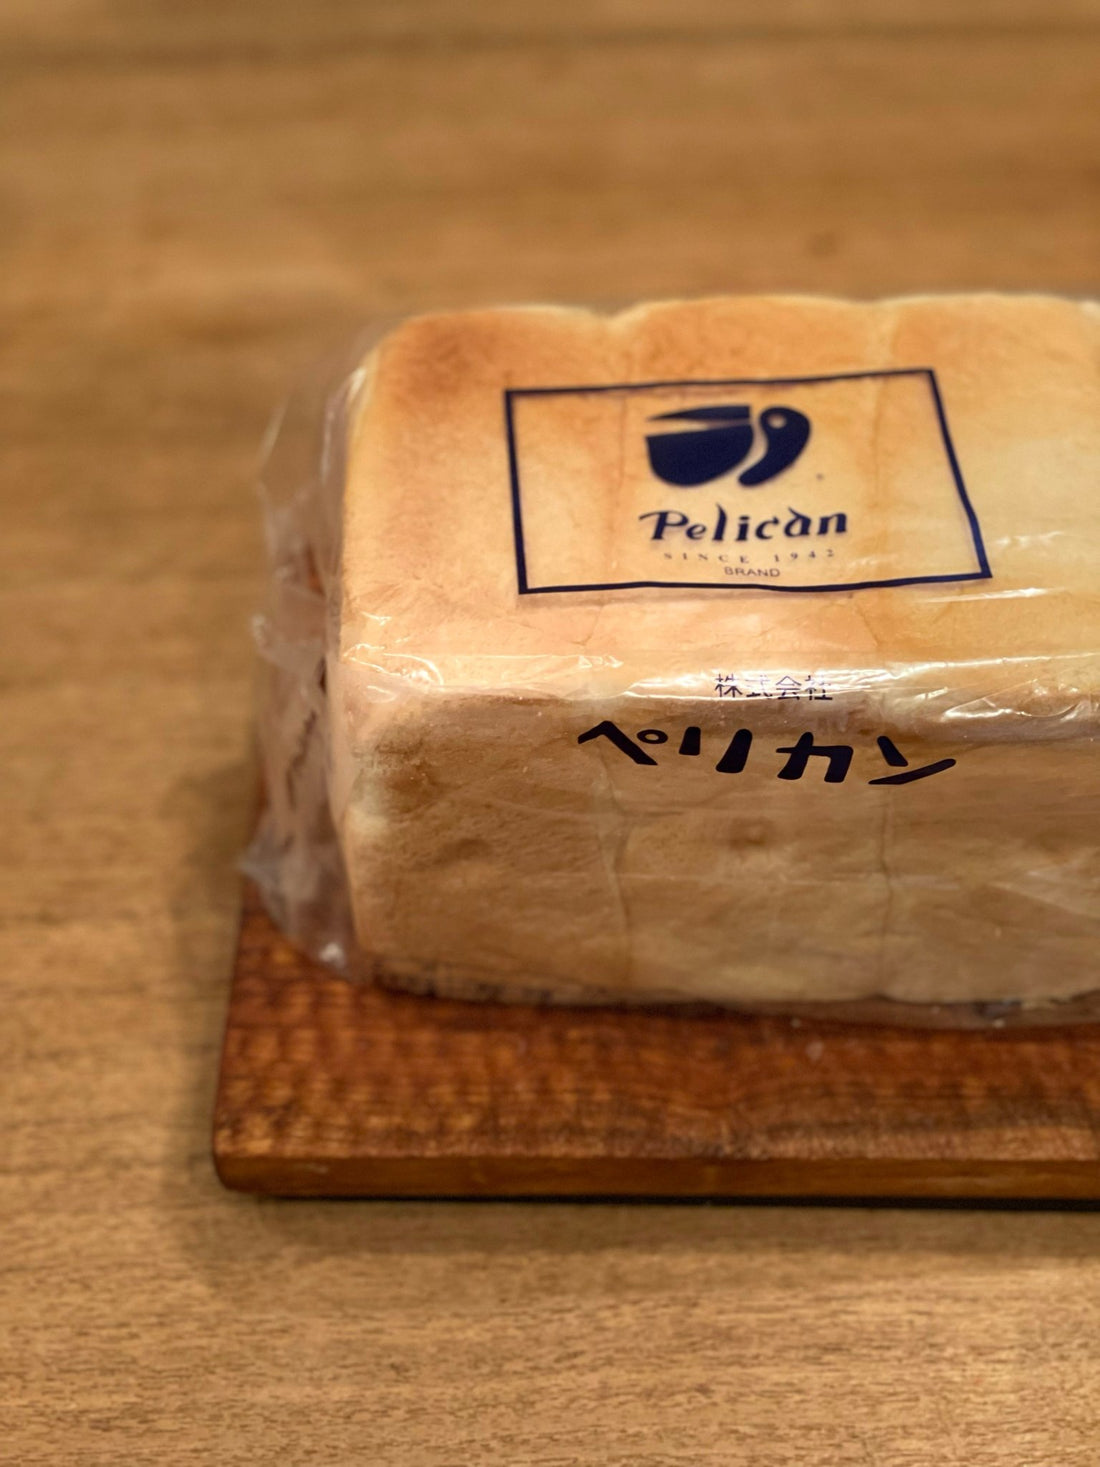 商品が定番になる難しさと、ペリカンのパンが好きな理由 - Coquette Online Shop